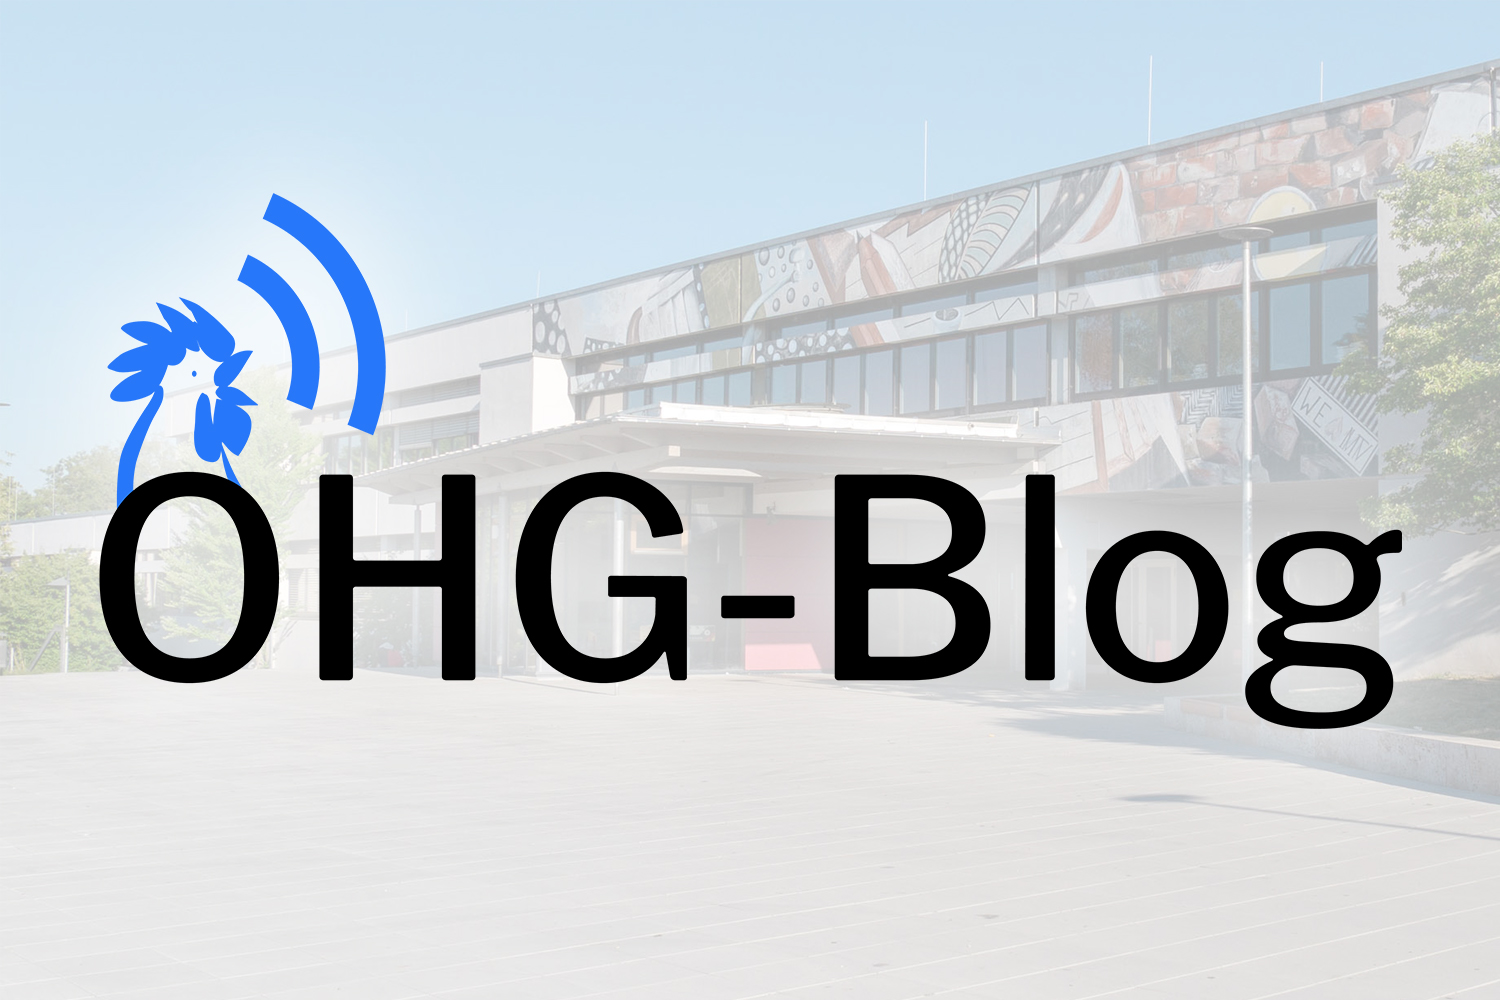 Der neue OHG-Blog ist da!